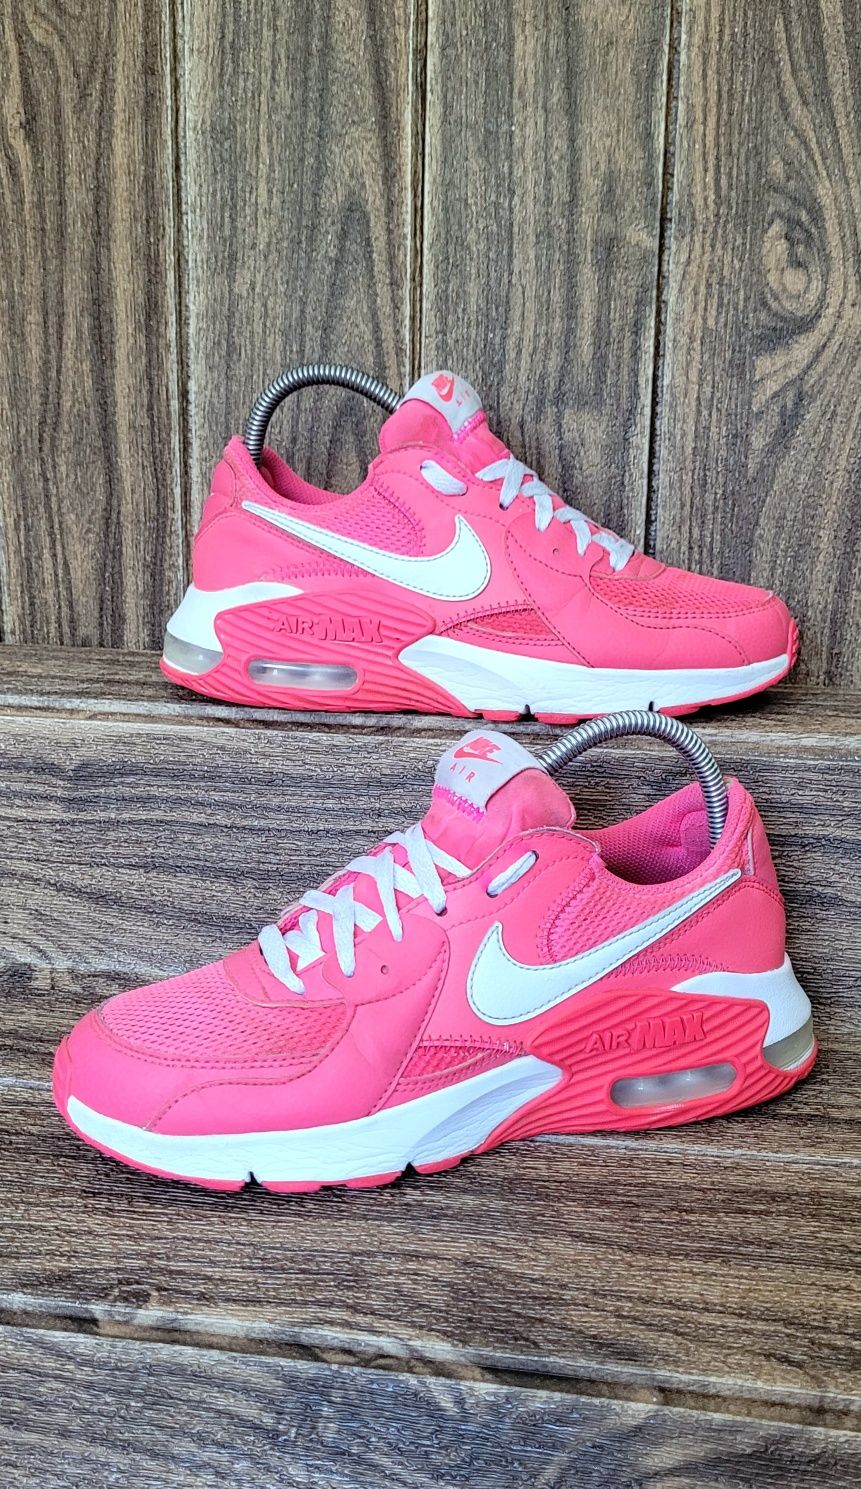 Sneakersy damskie Nike Air Max sportowe różowe lekkie skórzane 38 39